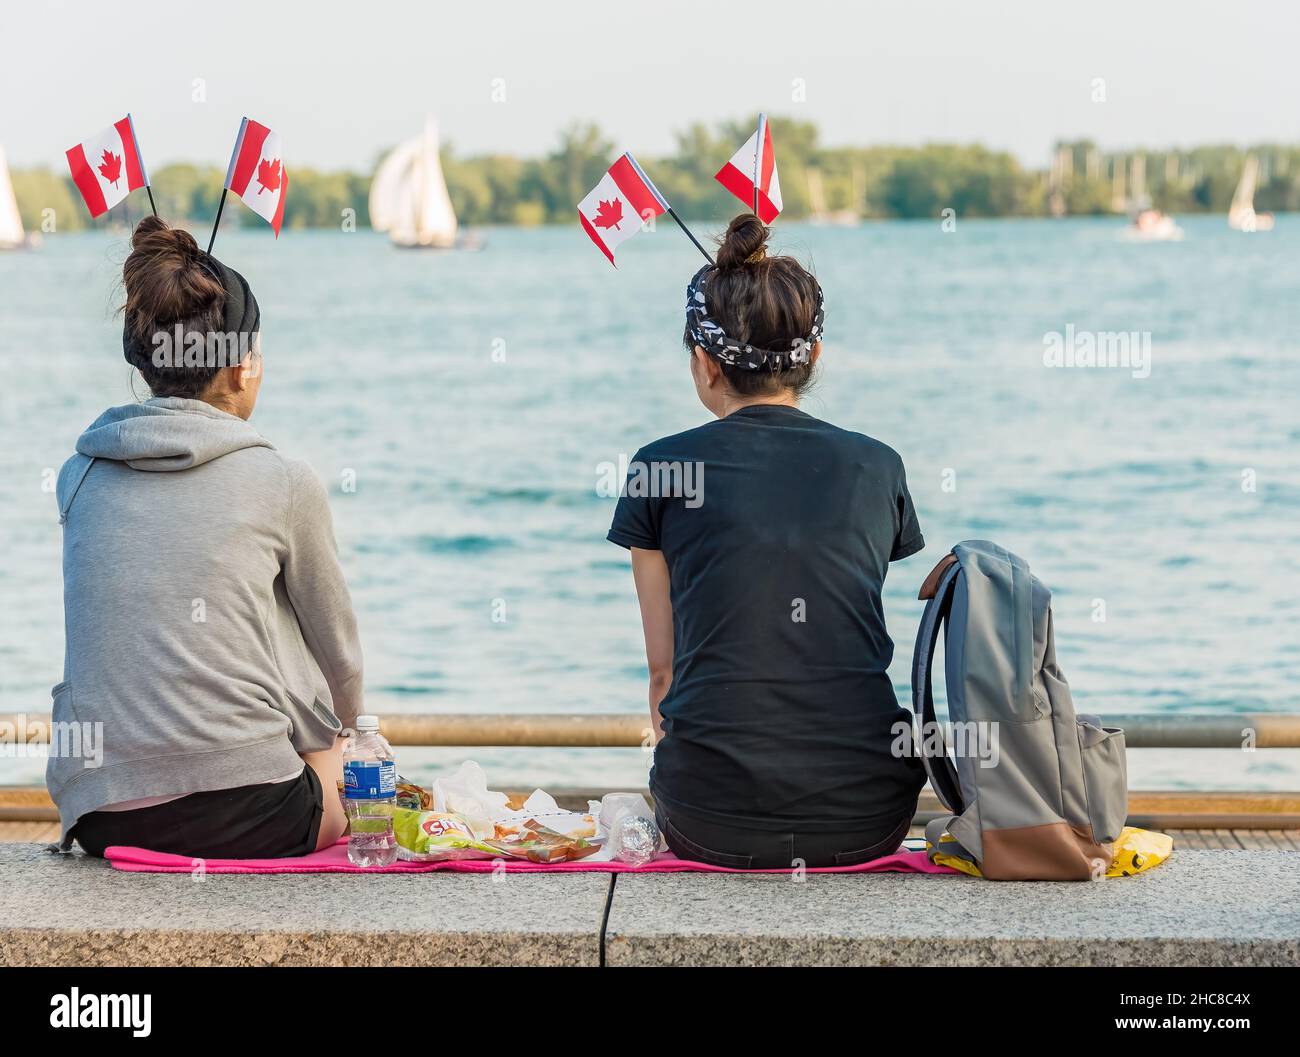 Toronto, Kanada - 1. Juli 2015: Kanadas Tag feiert, Freunde genießen einen Tag in der Toronto Harbourfront.zwei Mädchen sitzen und essen am Strand Stockfoto